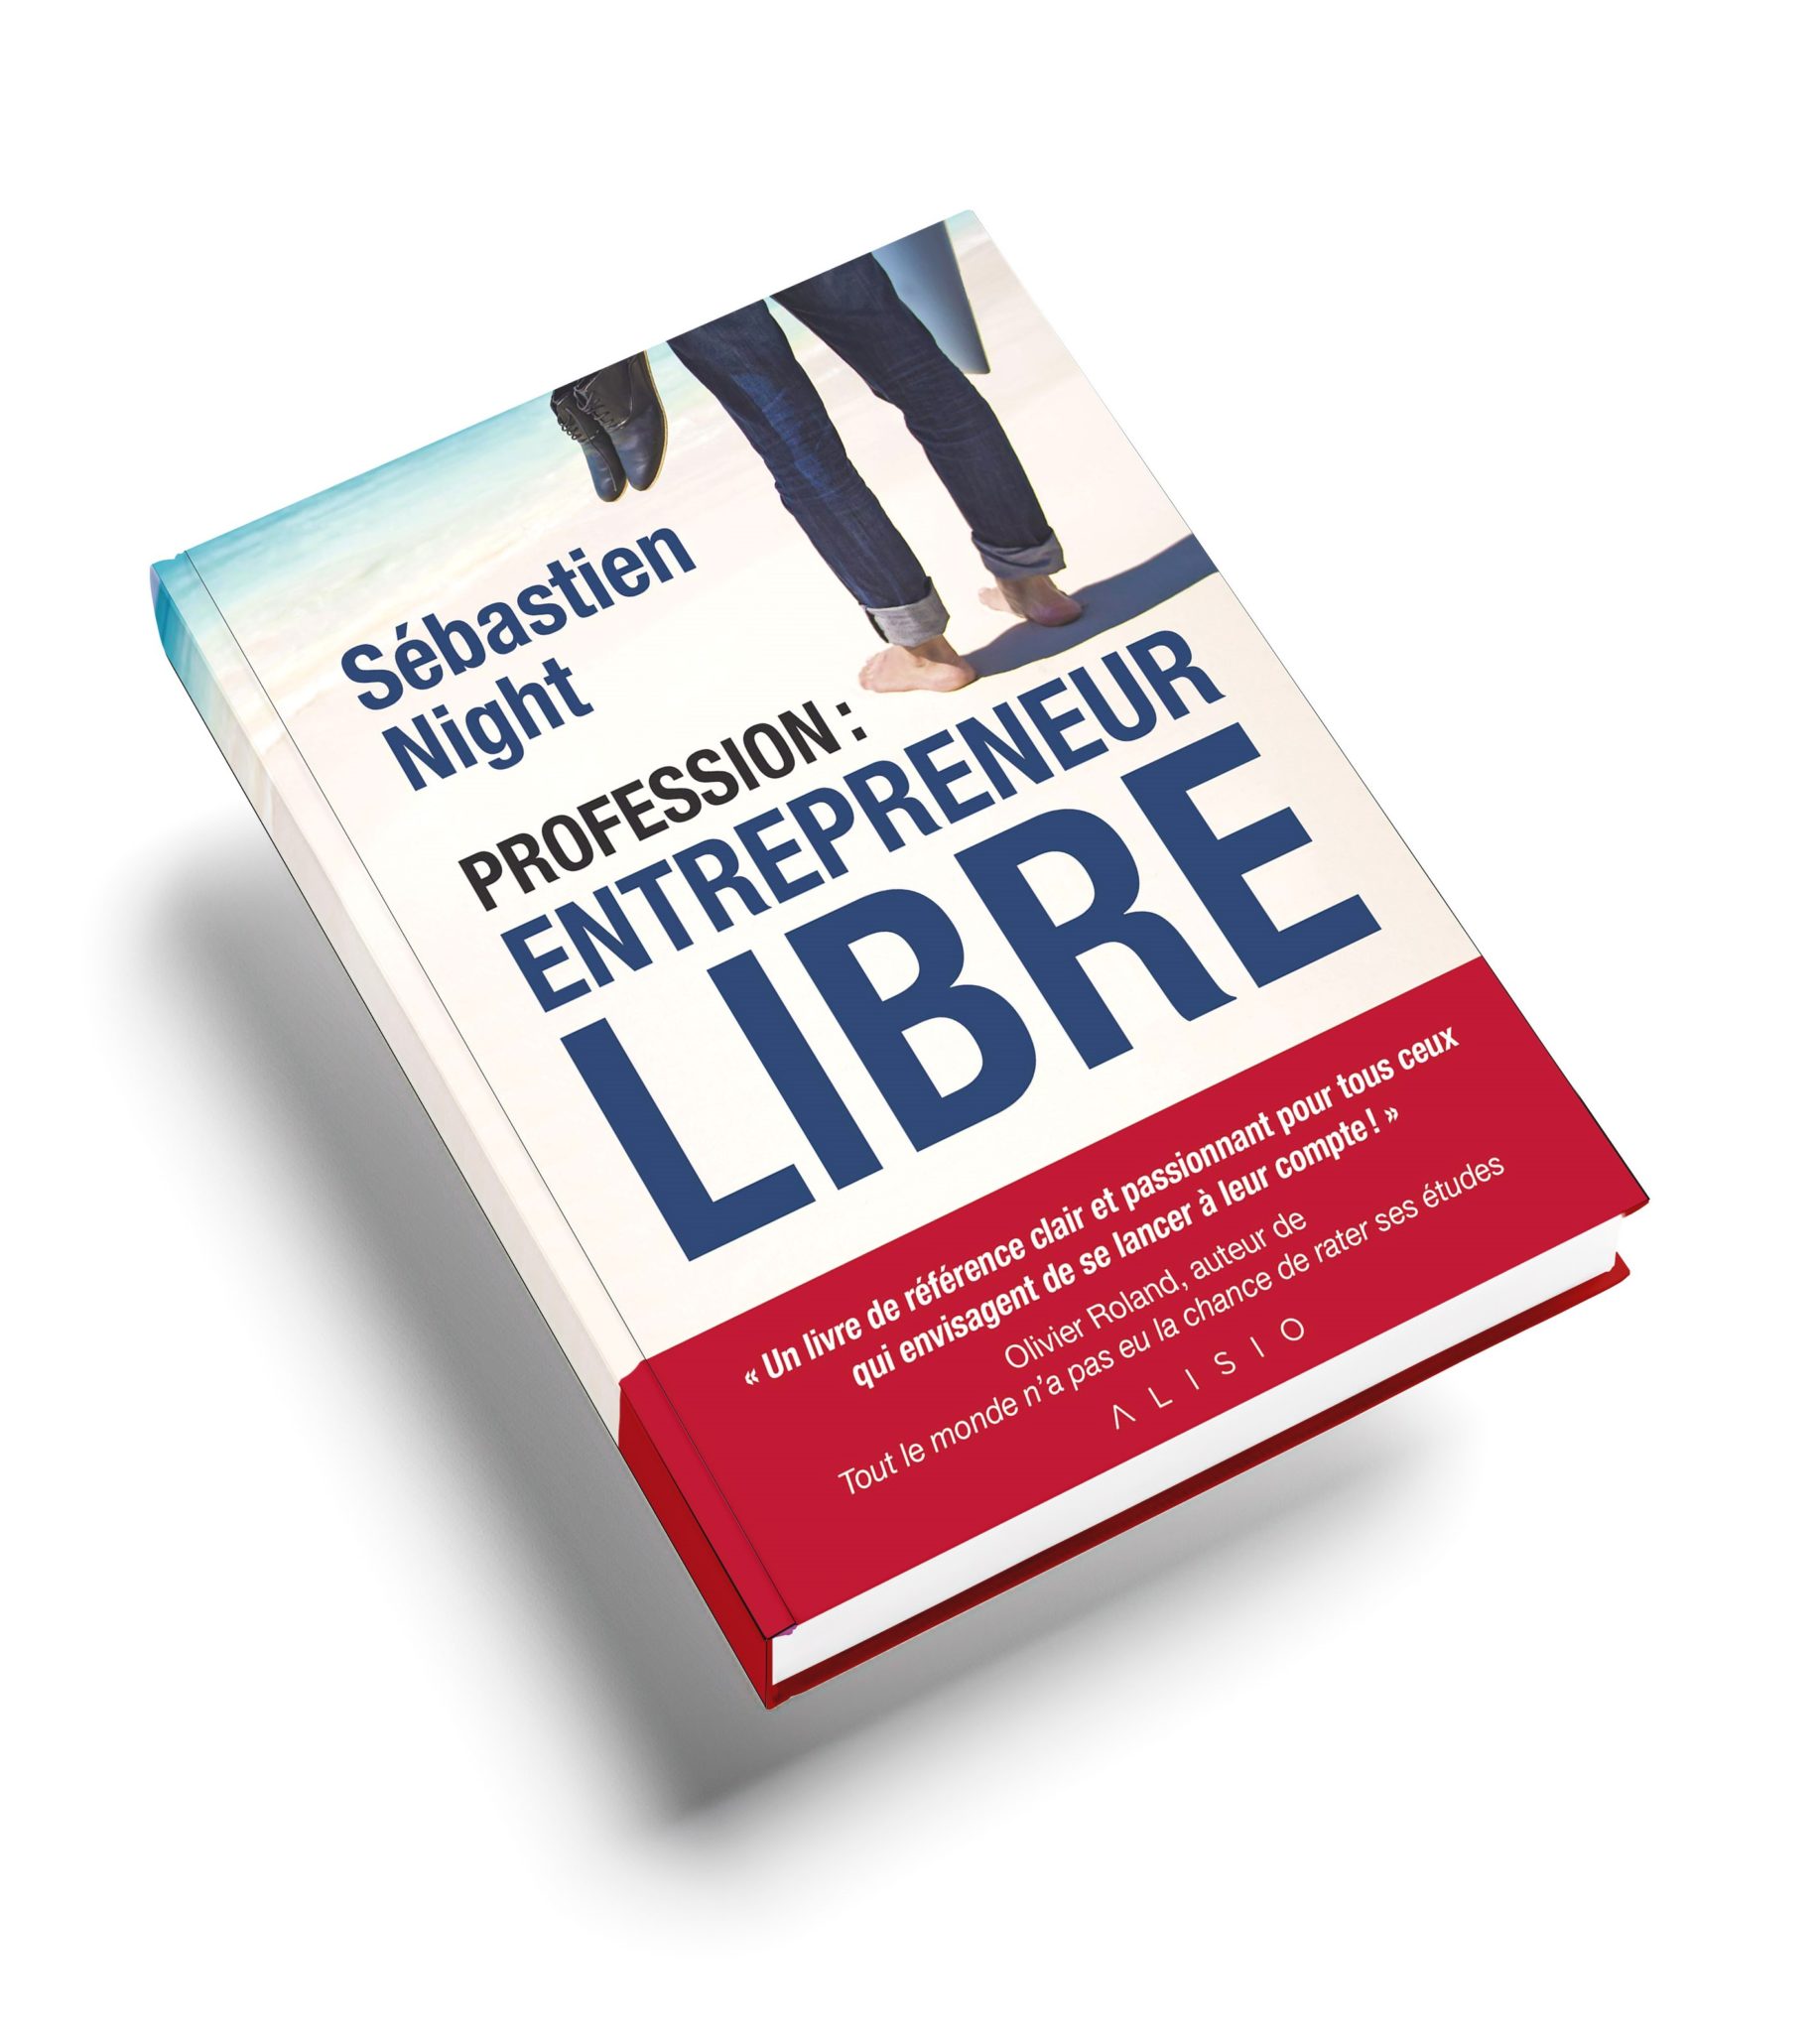 Profesion Entrepreneur Libre - sell small